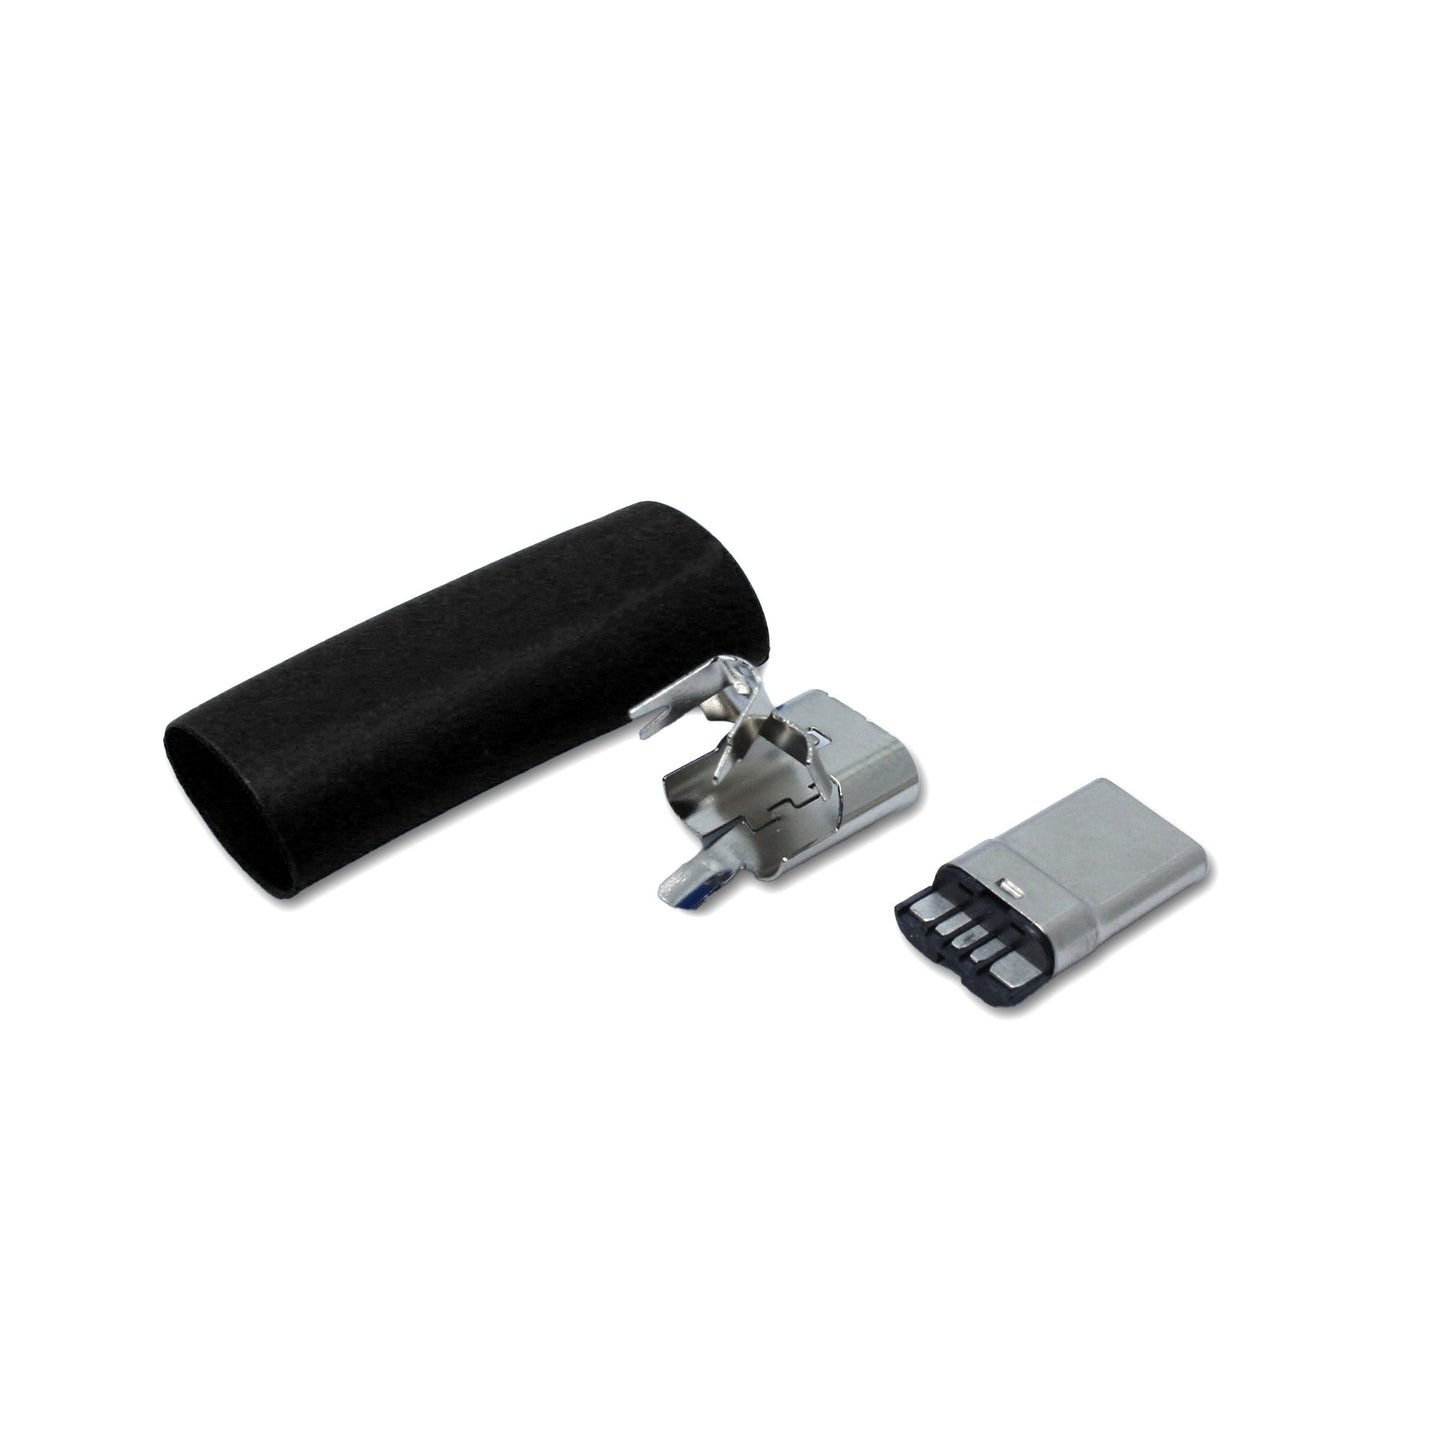 Einzelteile schwarz USB C Stecker, Ersatzteil für ein USB 2.0 Kabel  Alt-Text bearbeiten